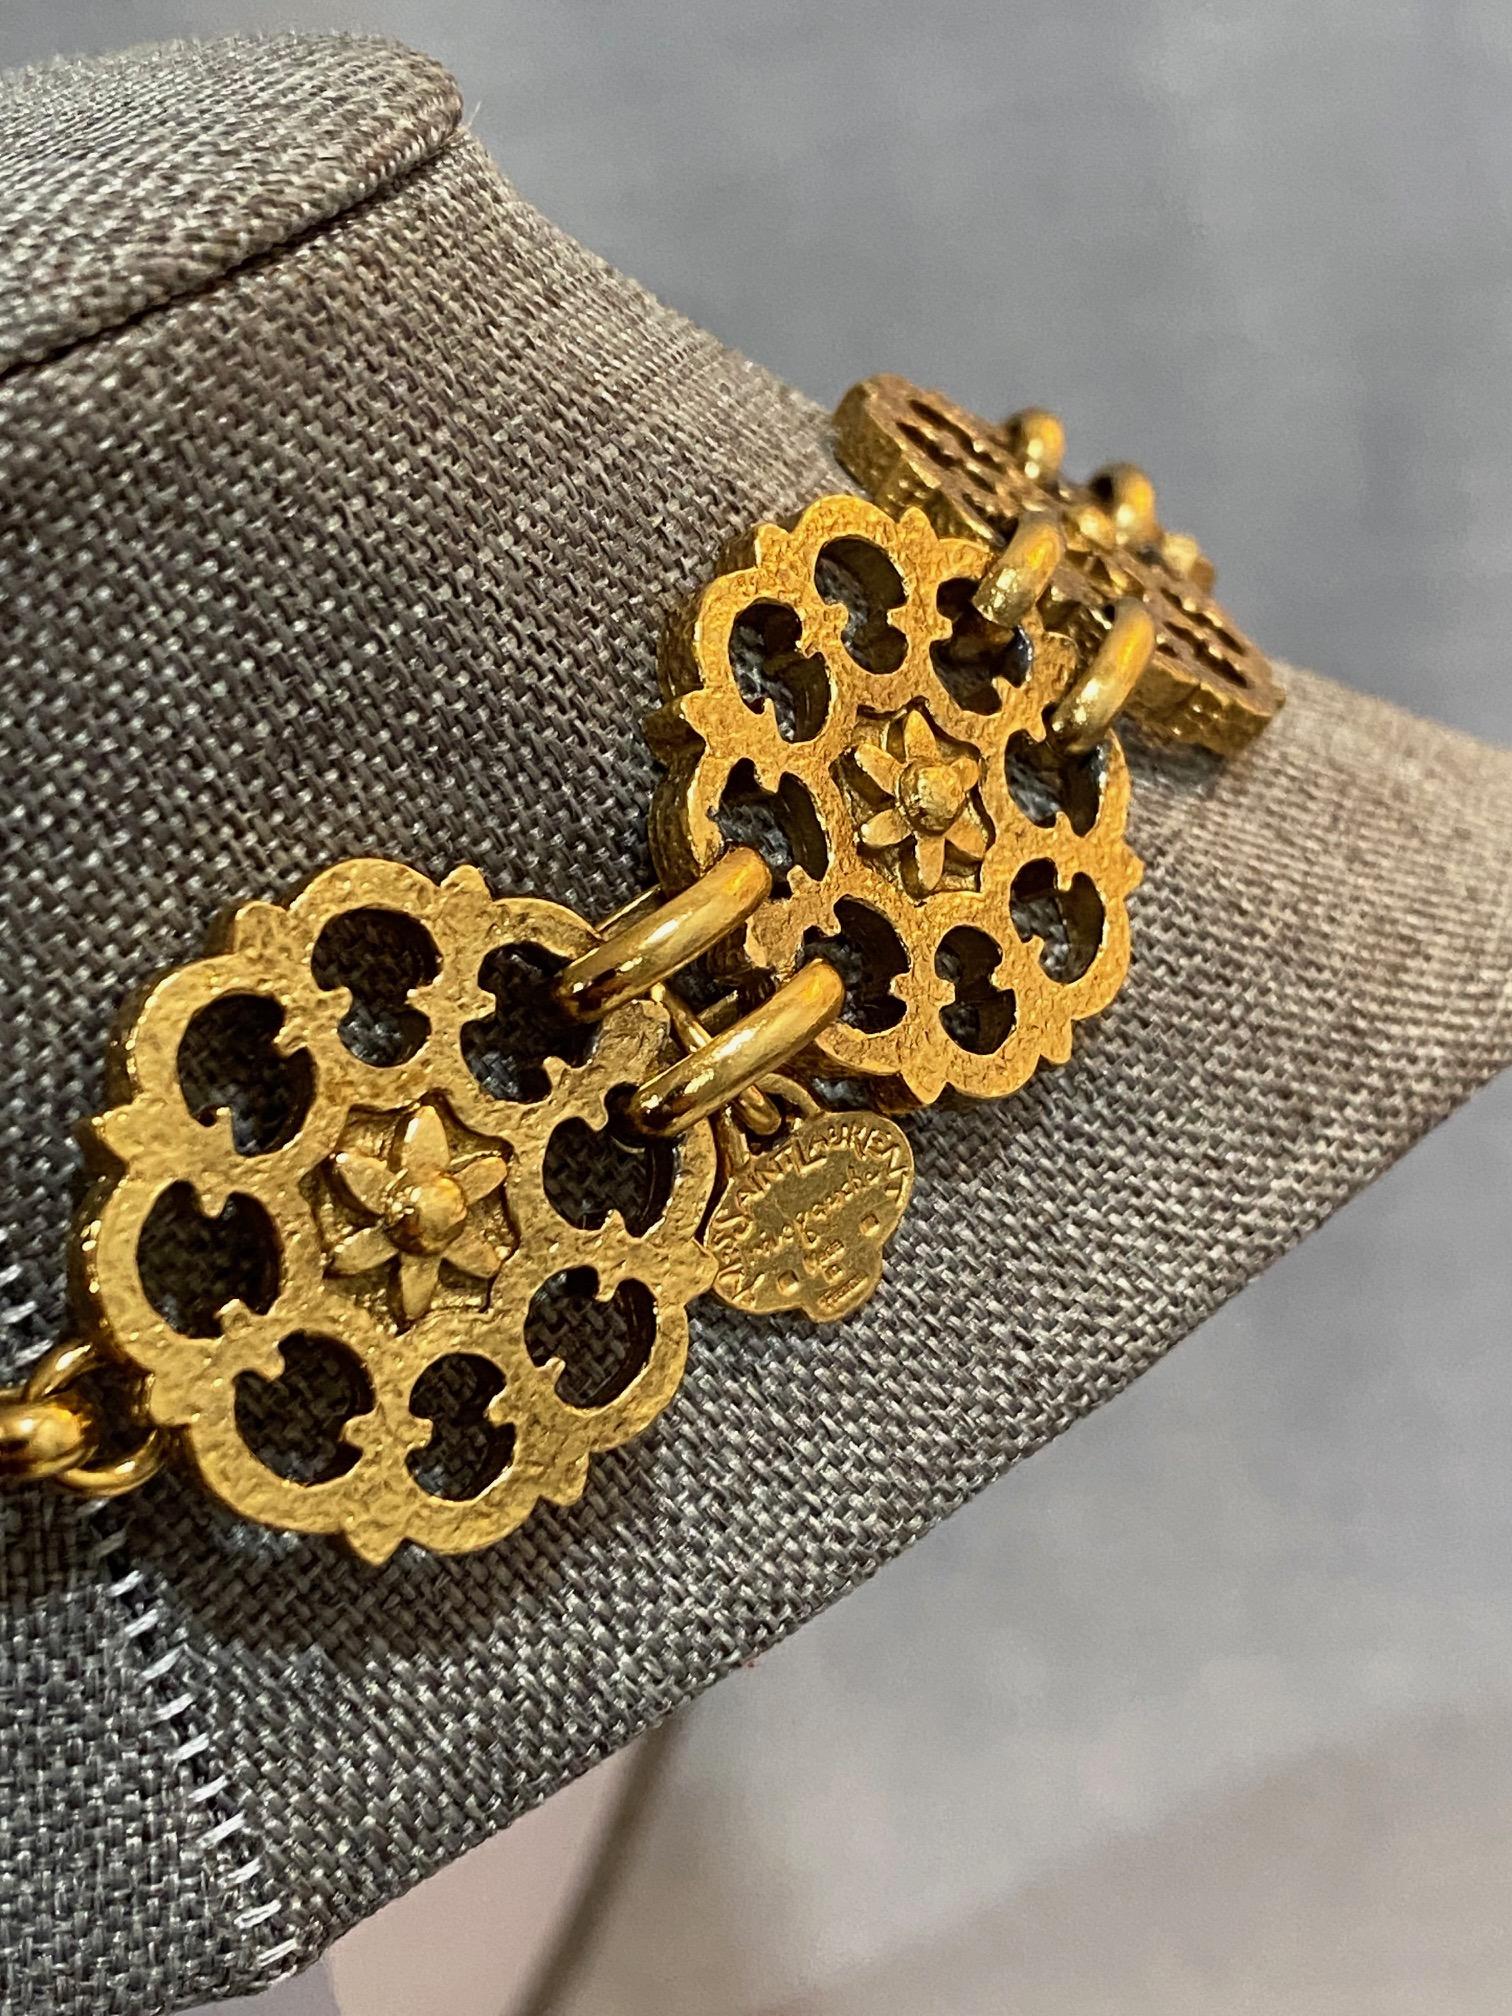 Yves Saint Laurent, Rive Gauche, 1980s Gold Belt / Necklace For Sale 4